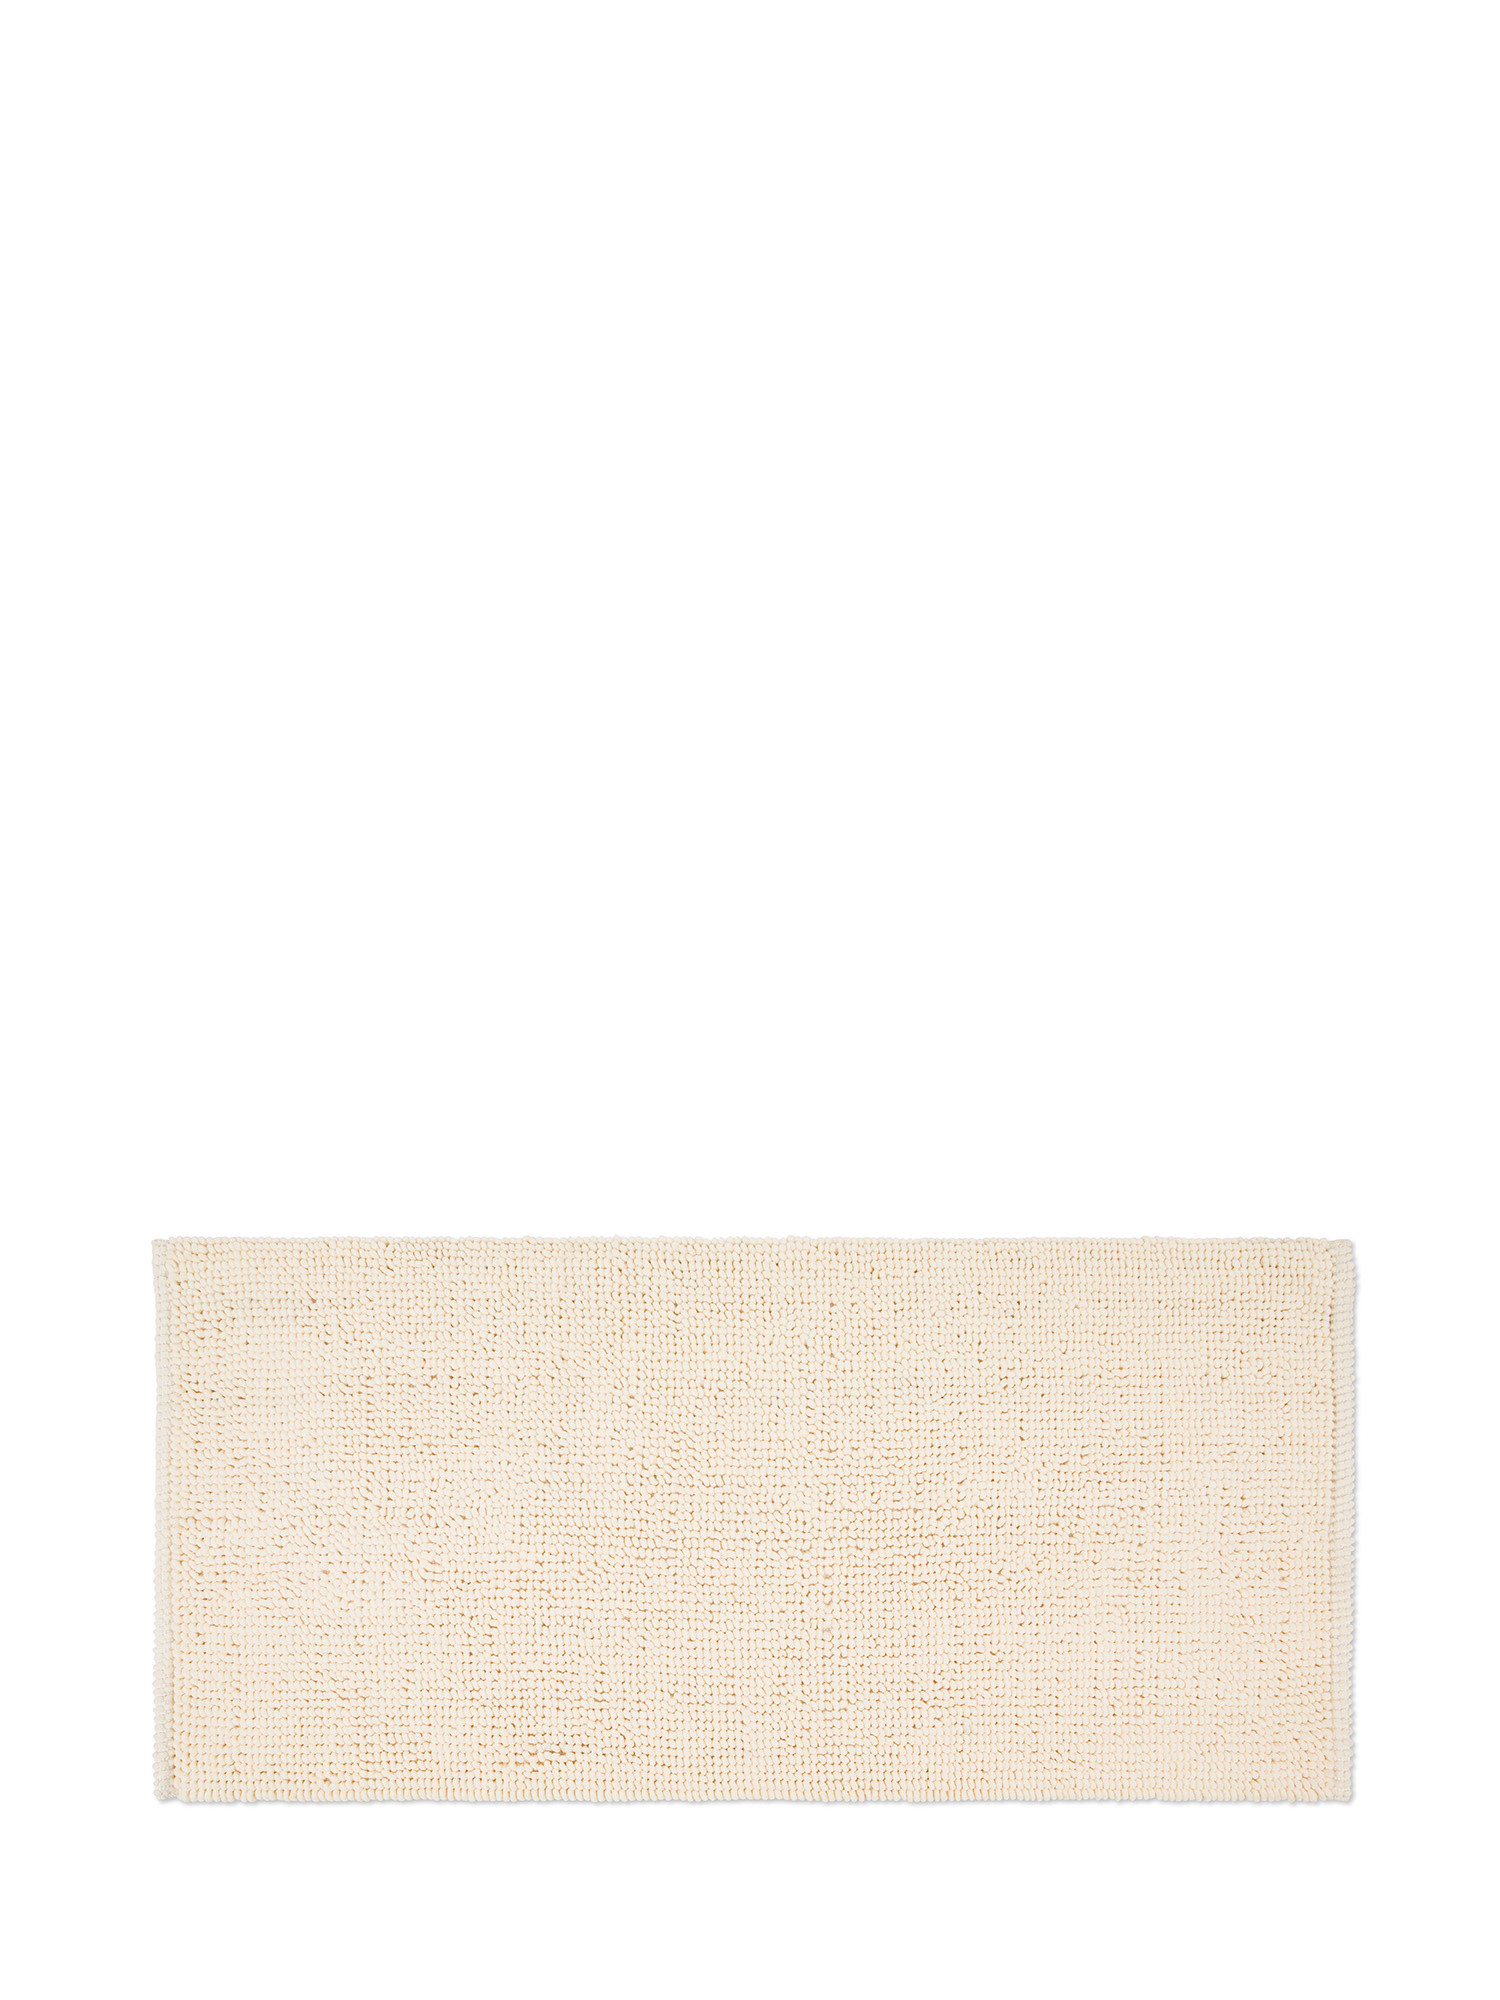 Мохнатый коврик для ванной Coincasa, светло-бежевый белоснежный детский игровой коврик коврик для ванной нескользящий коврик для ванной комнаты абсорбирующий мультяшный коврик нескользящ